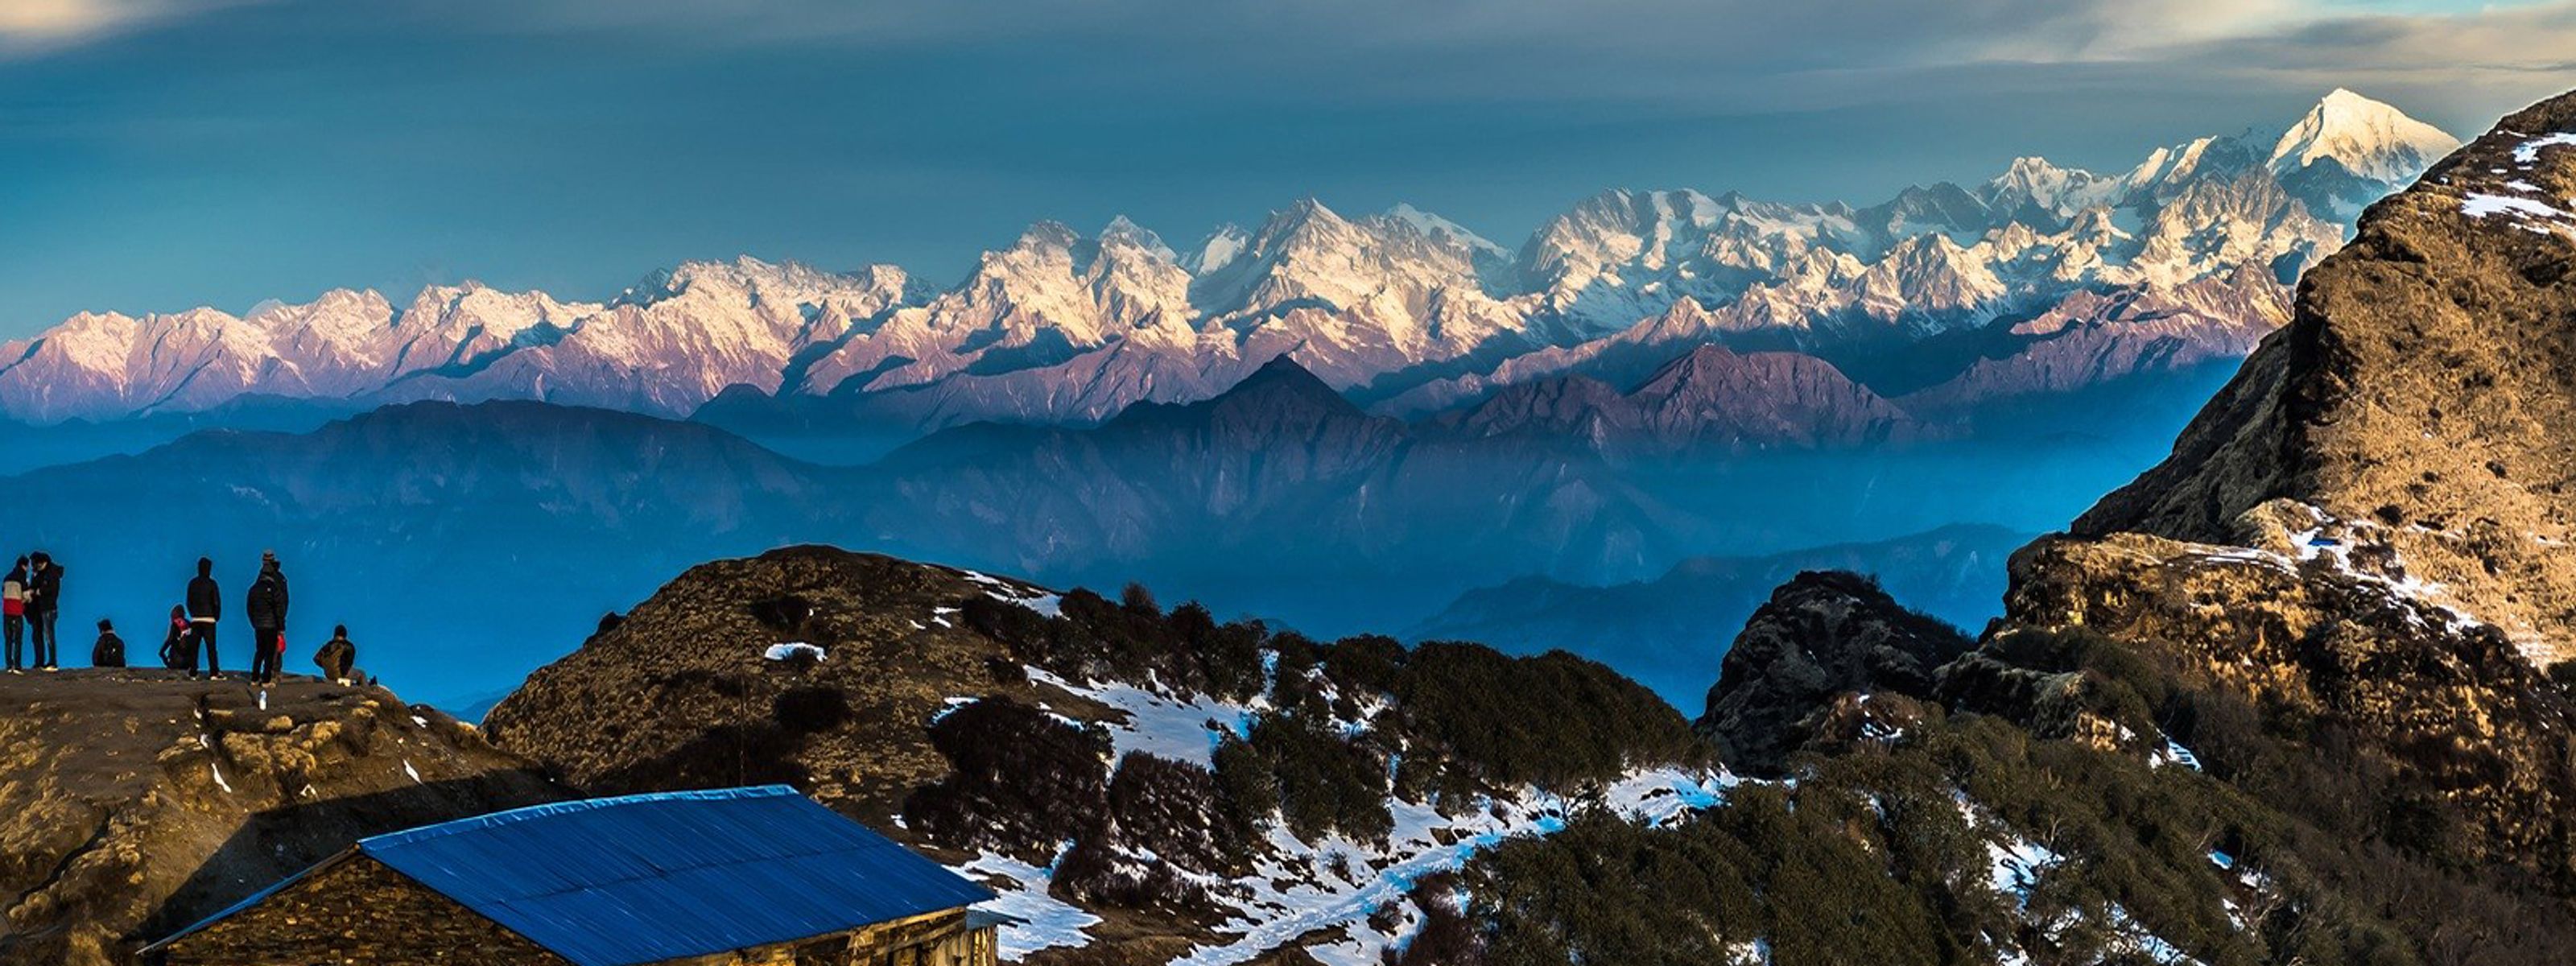 Faszinierende Bergwelten Nepals